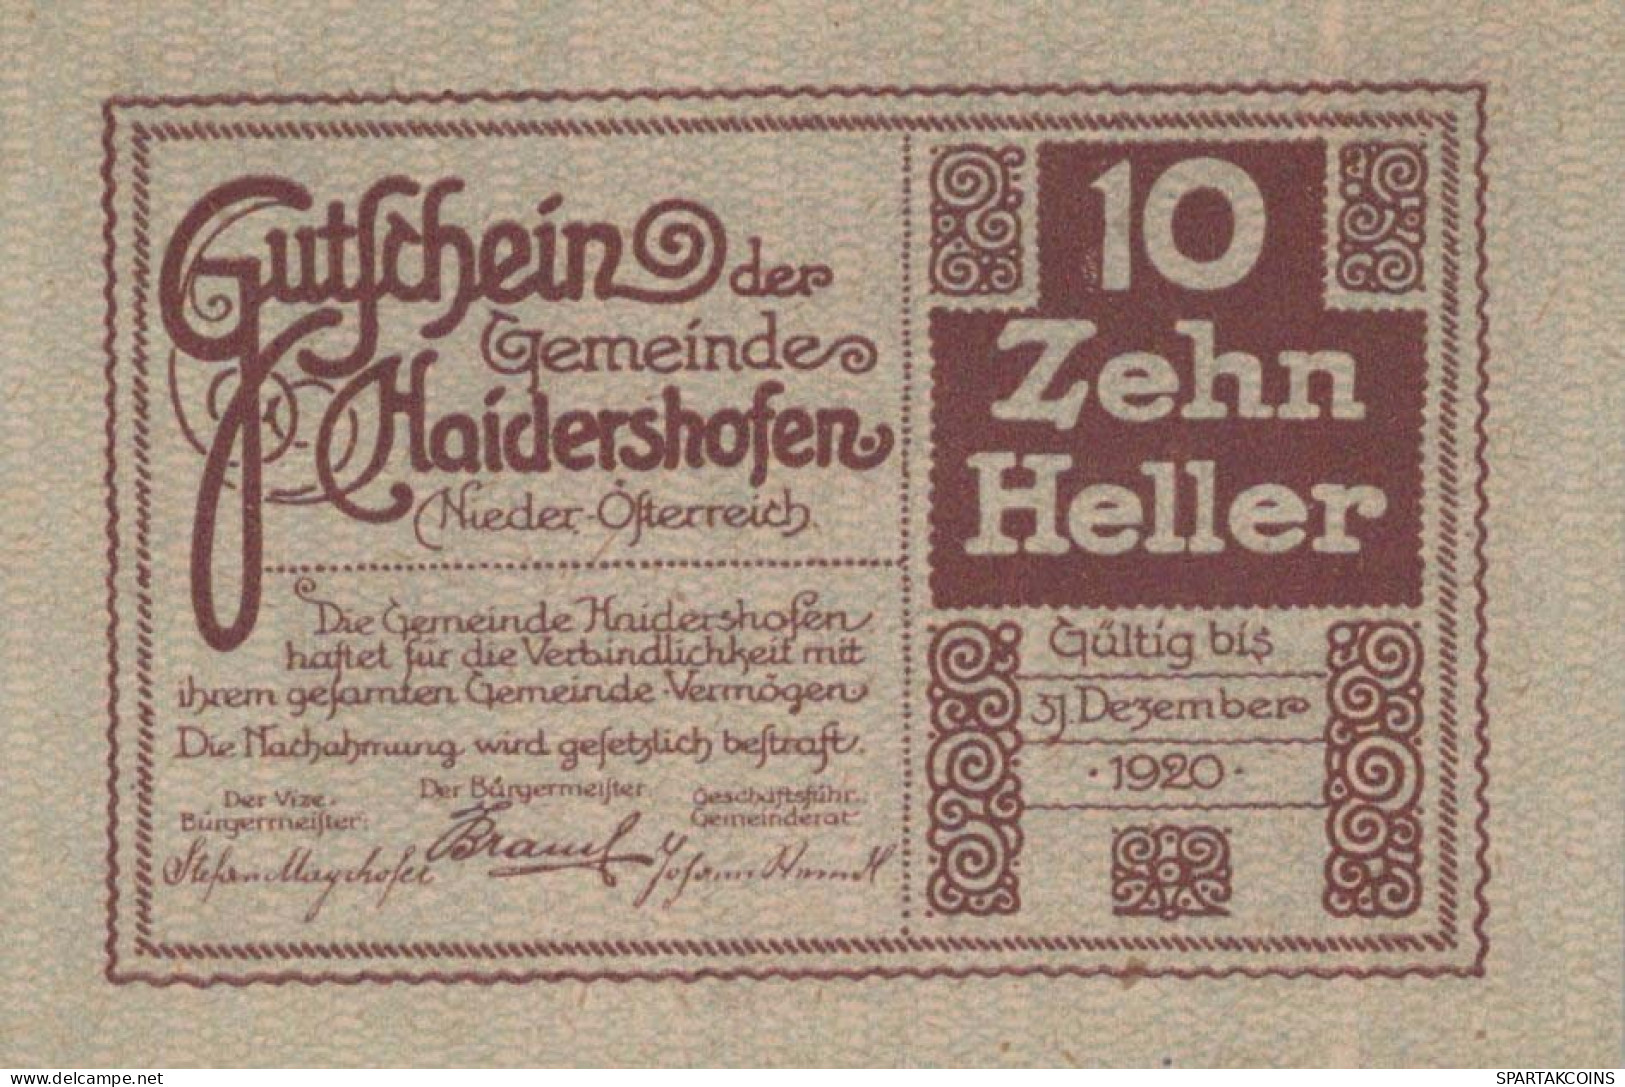 10 HELLER 1920 Stadt HAIDERSHOFEN Niedrigeren Österreich Notgeld Papiergeld Banknote #PG869 - [11] Local Banknote Issues